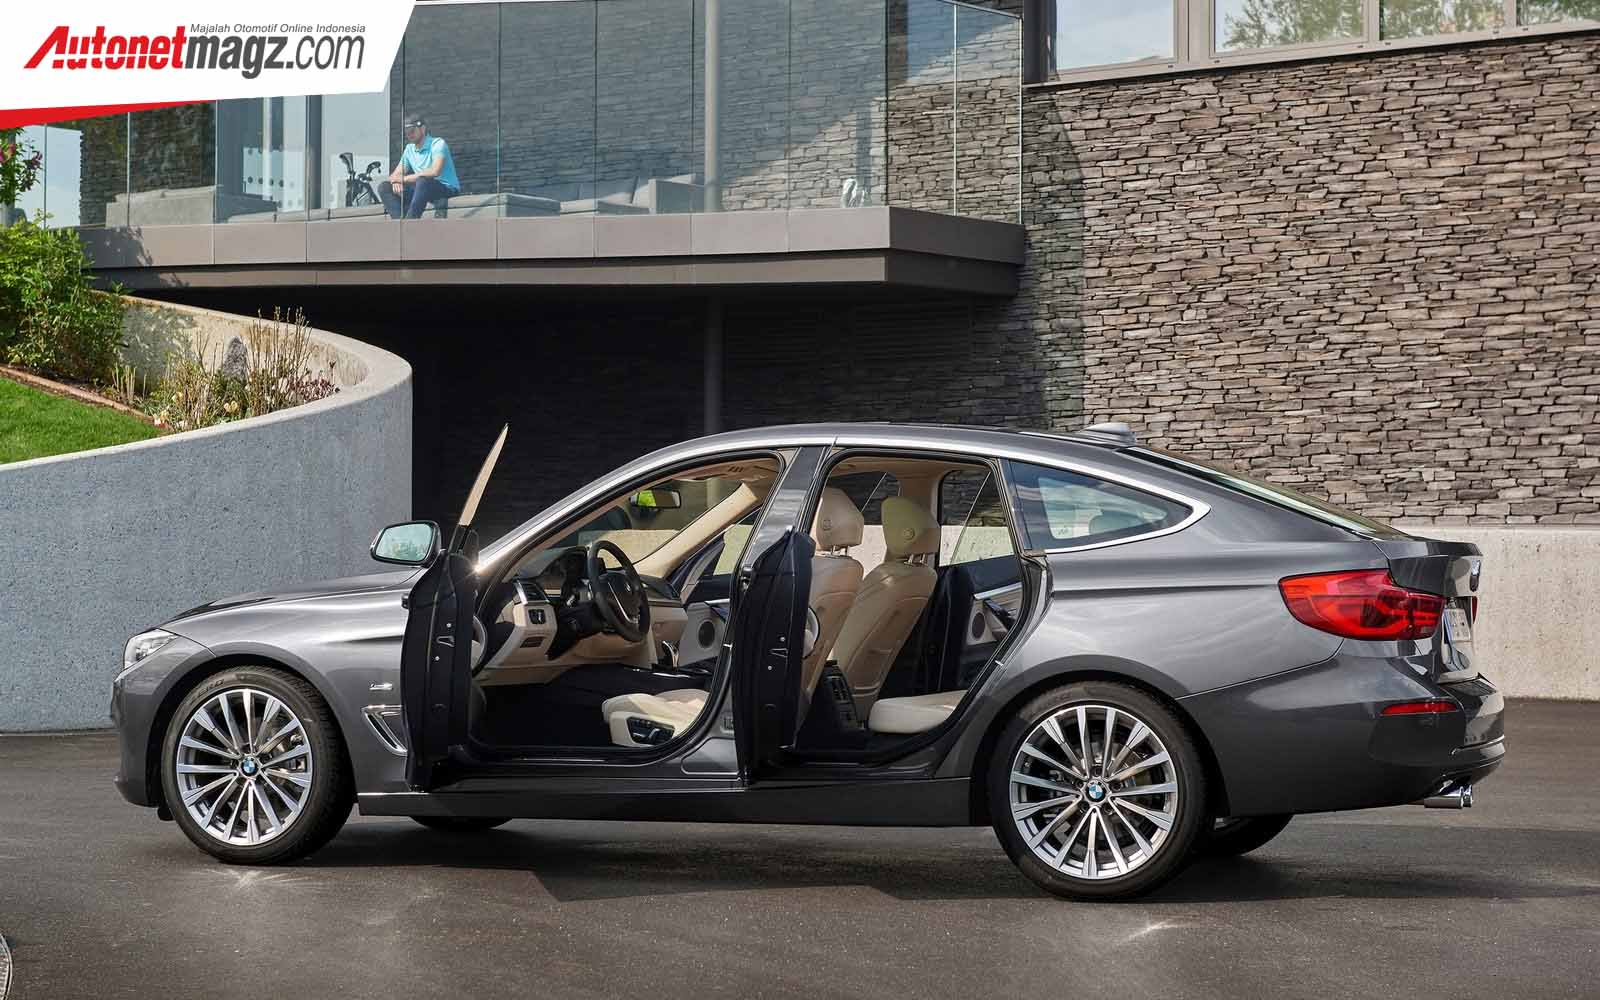 Berita, Kabin BMW 3-Series GT: Angka Penjualan Rendah, BMW Bakal Discontinue Seri-3 GT